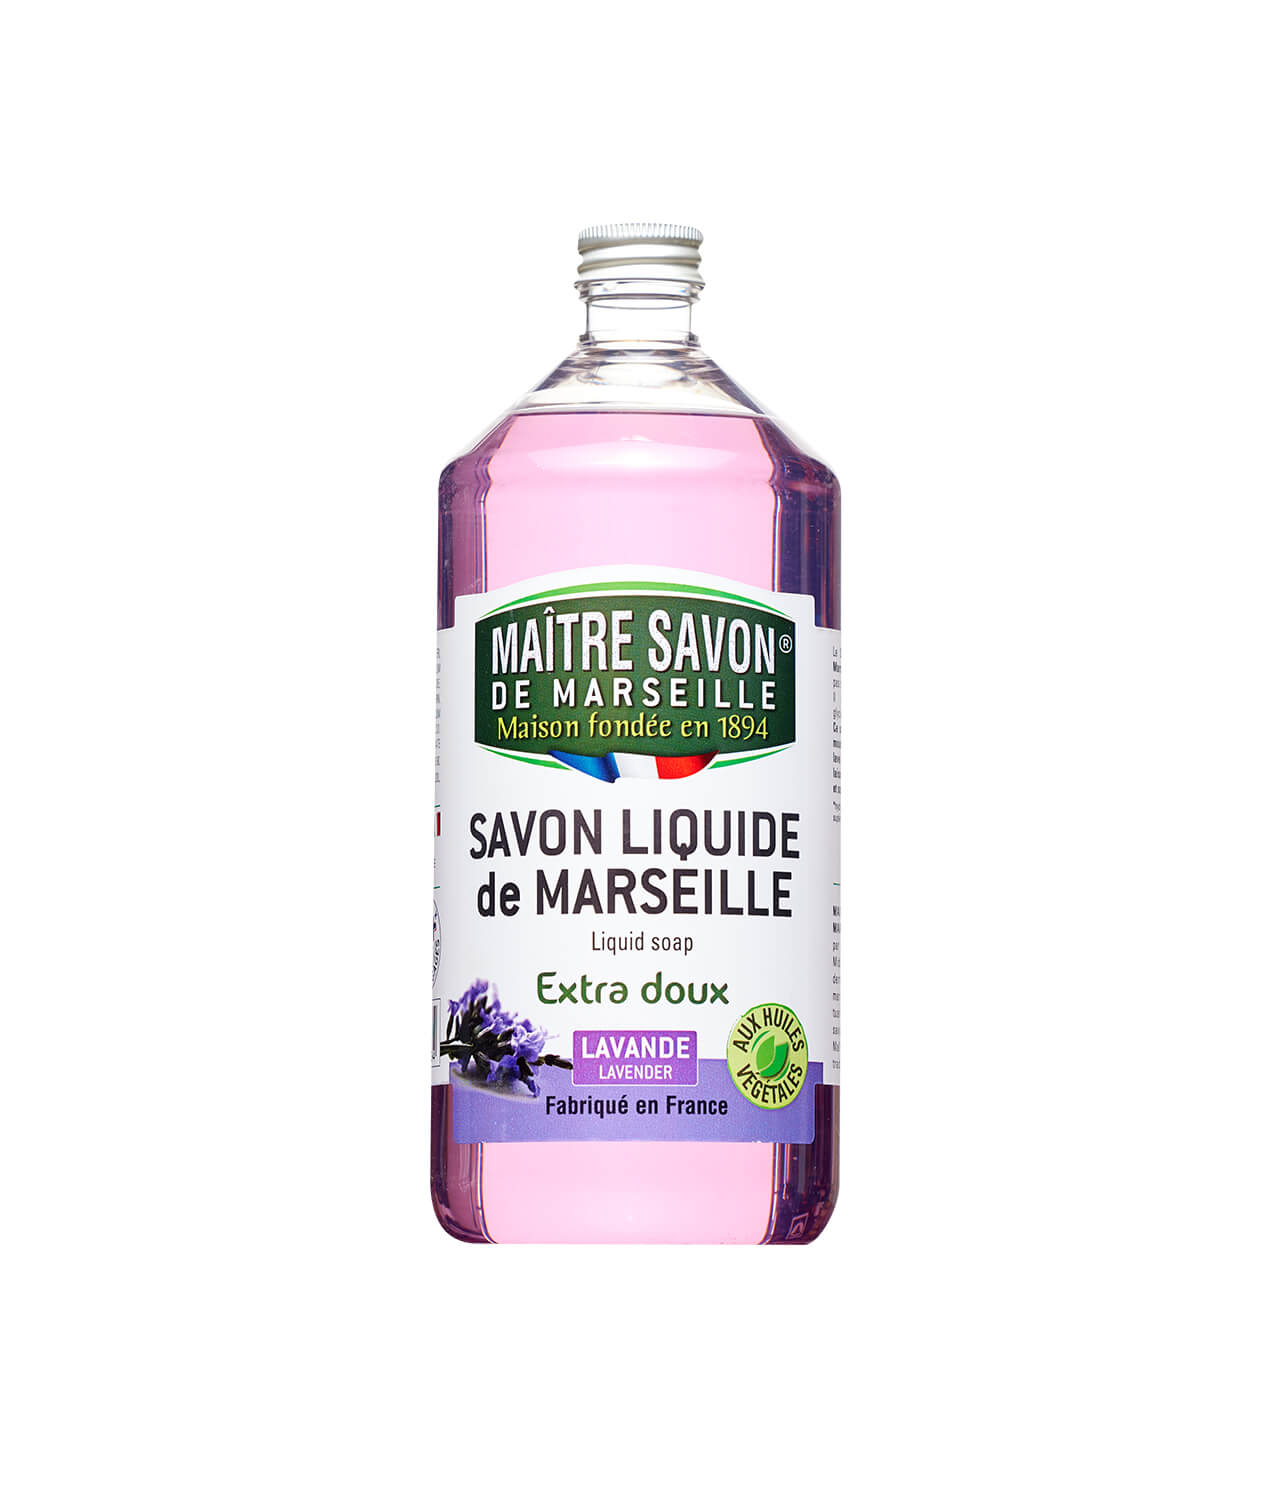 https://www.produitdentretien.com/wp-content/uploads/2021/05/maitre-savon-de-marseille-savon-liquide-de-marseille-extra-doux-lavande-1l-001.jpg